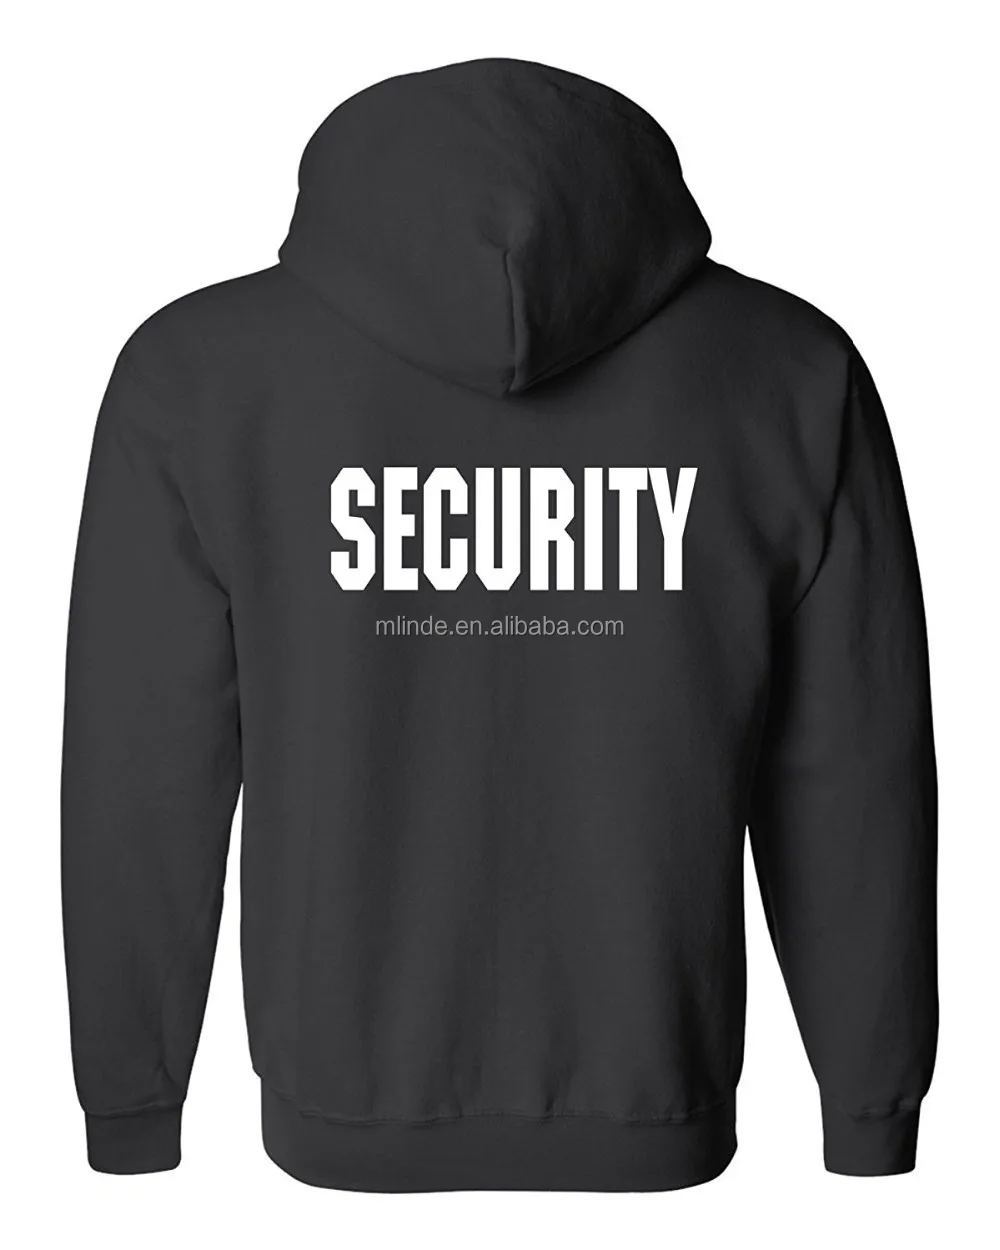 Security Silkscreen Front & Back Black Full Zip Hoodie,Ring-spun Cotton ...